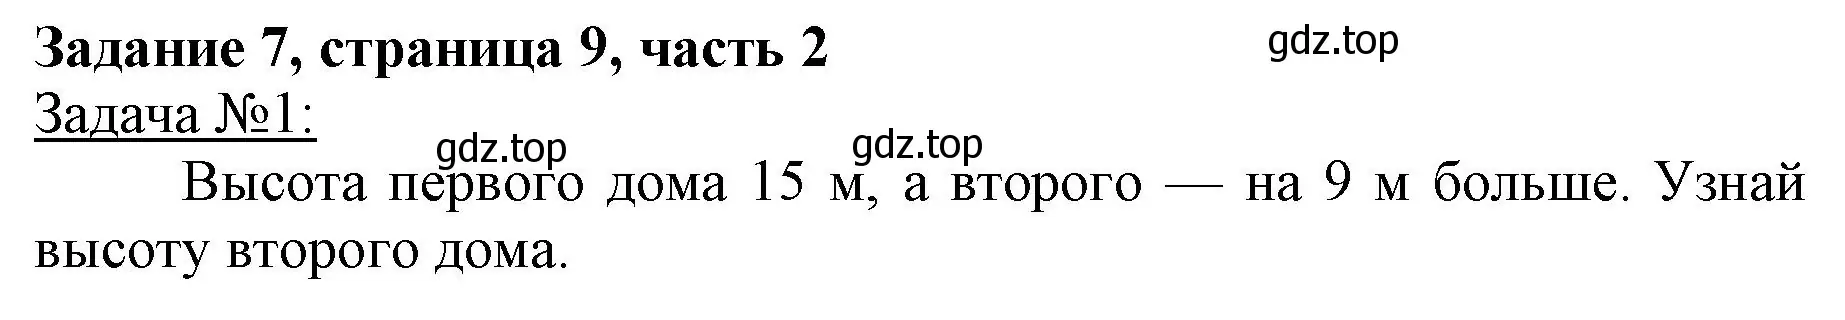 Решение номер 7 (страница 9) гдз по математике 3 класс Моро, Бантова, учебник 2 часть